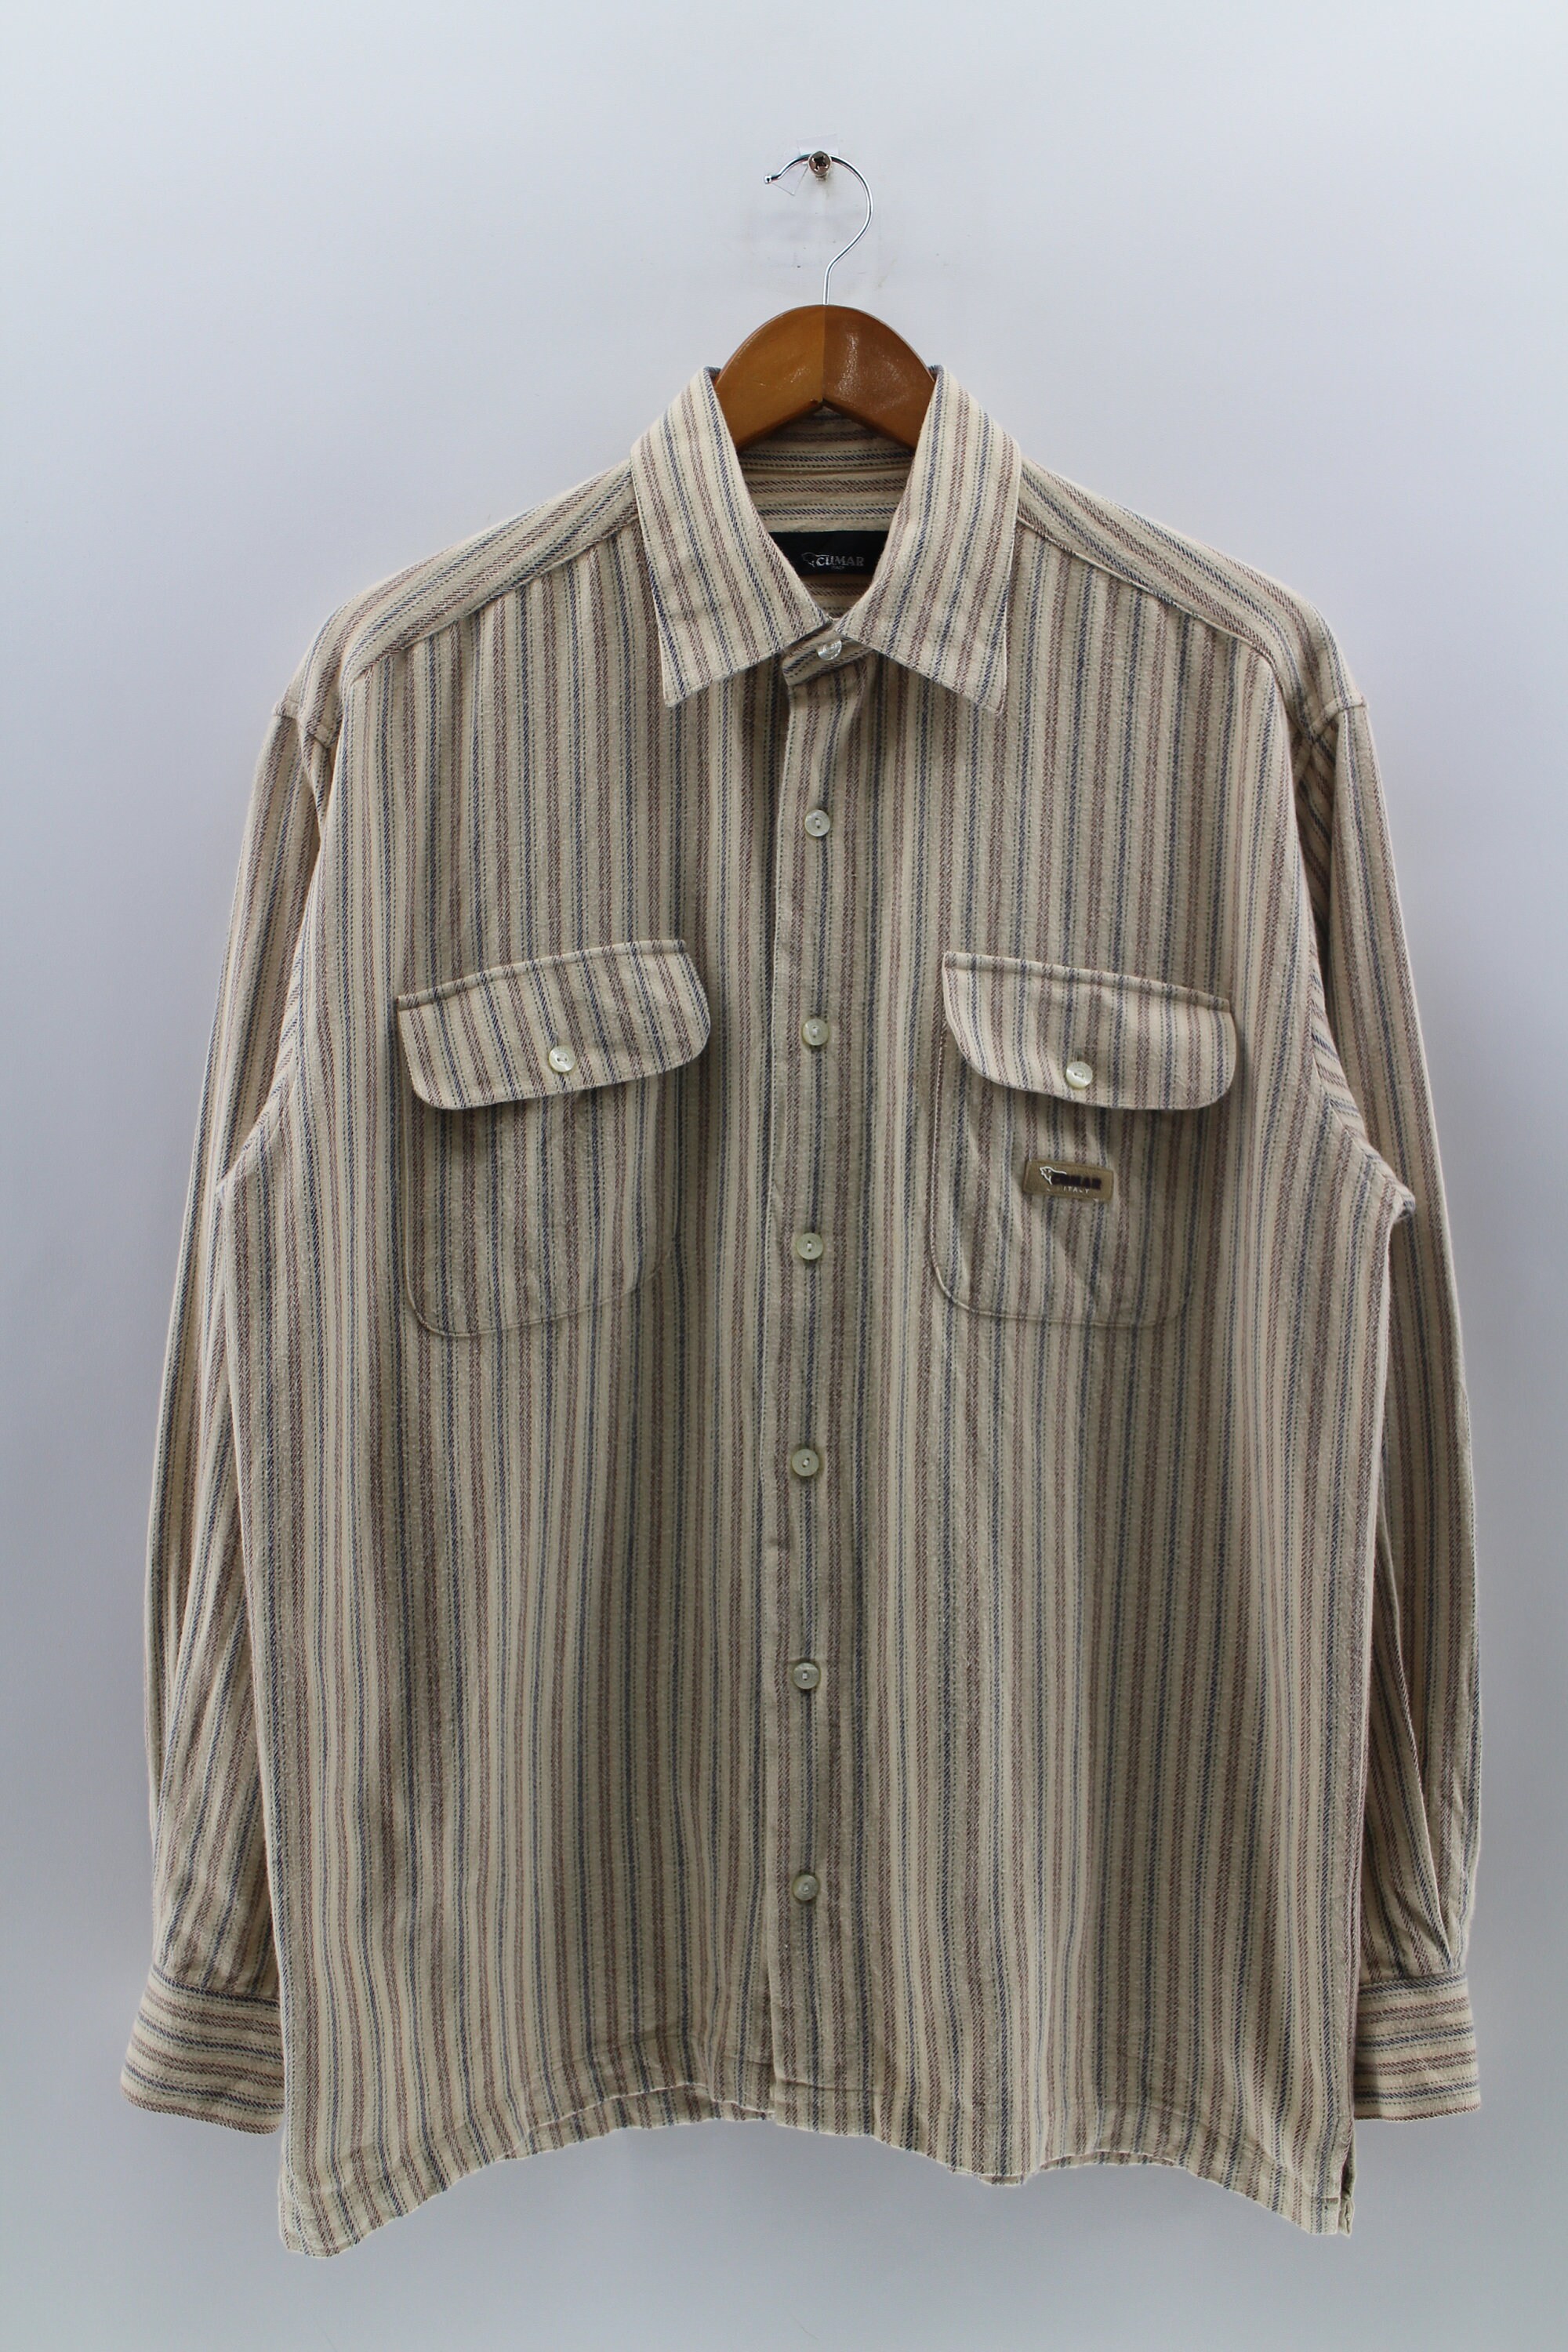 Kleding Herenkleding Overhemden & T-shirts Oxfords & Buttondowns 1960's Men's Georgia State Prison Uniform Shirt 